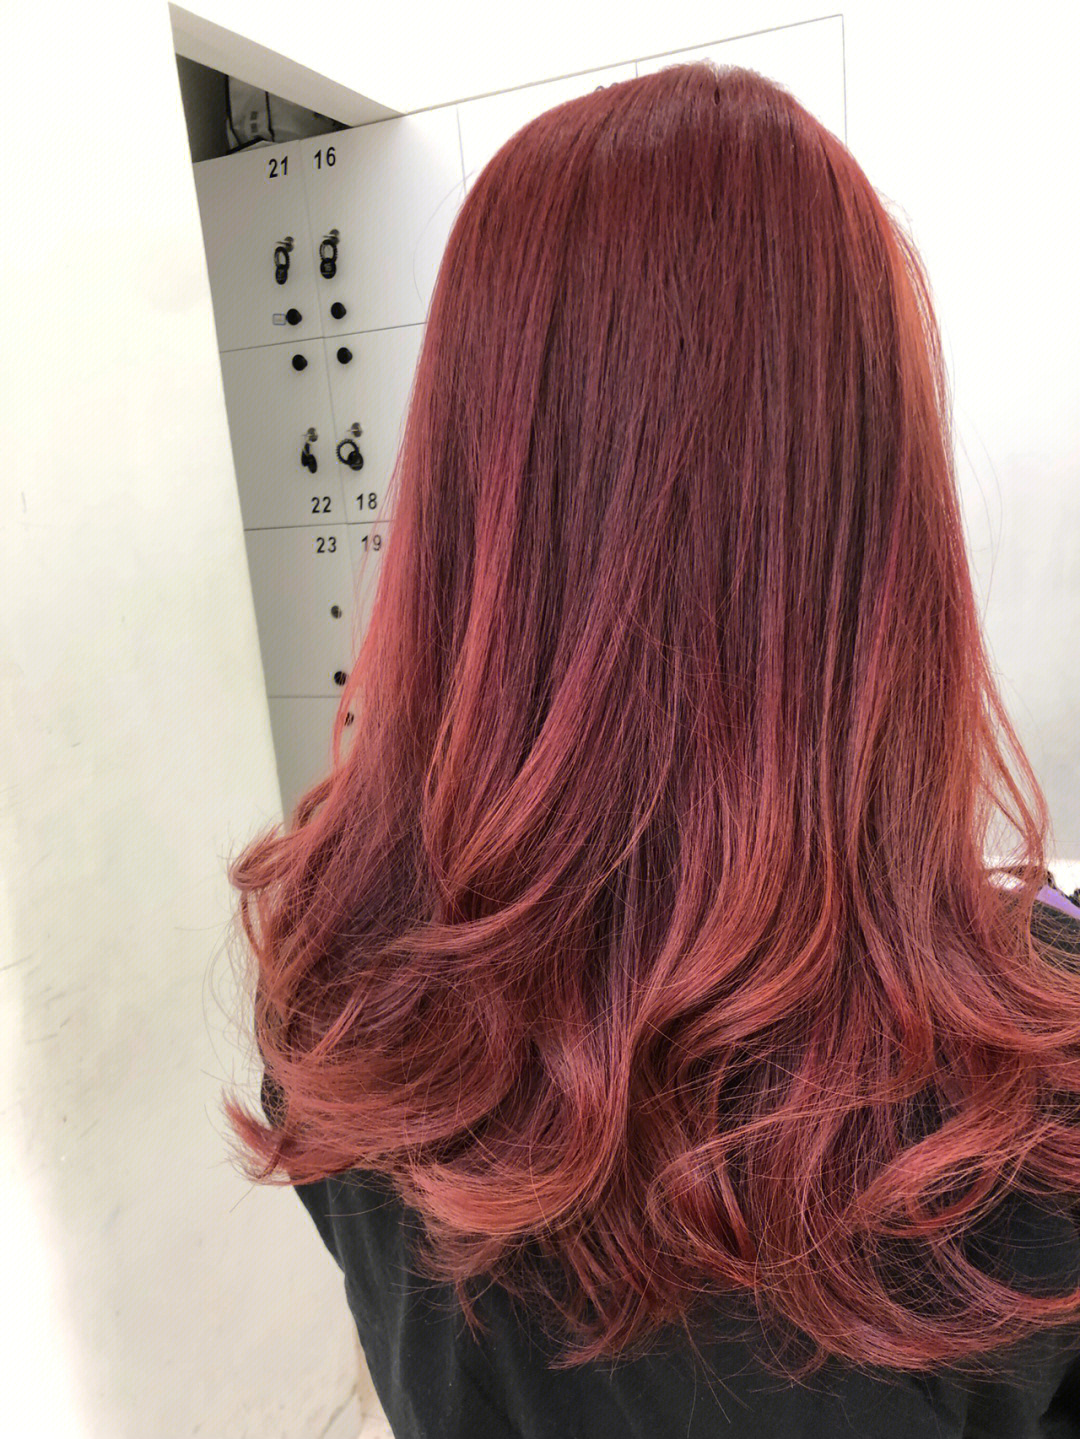 暗紫红色头发图片